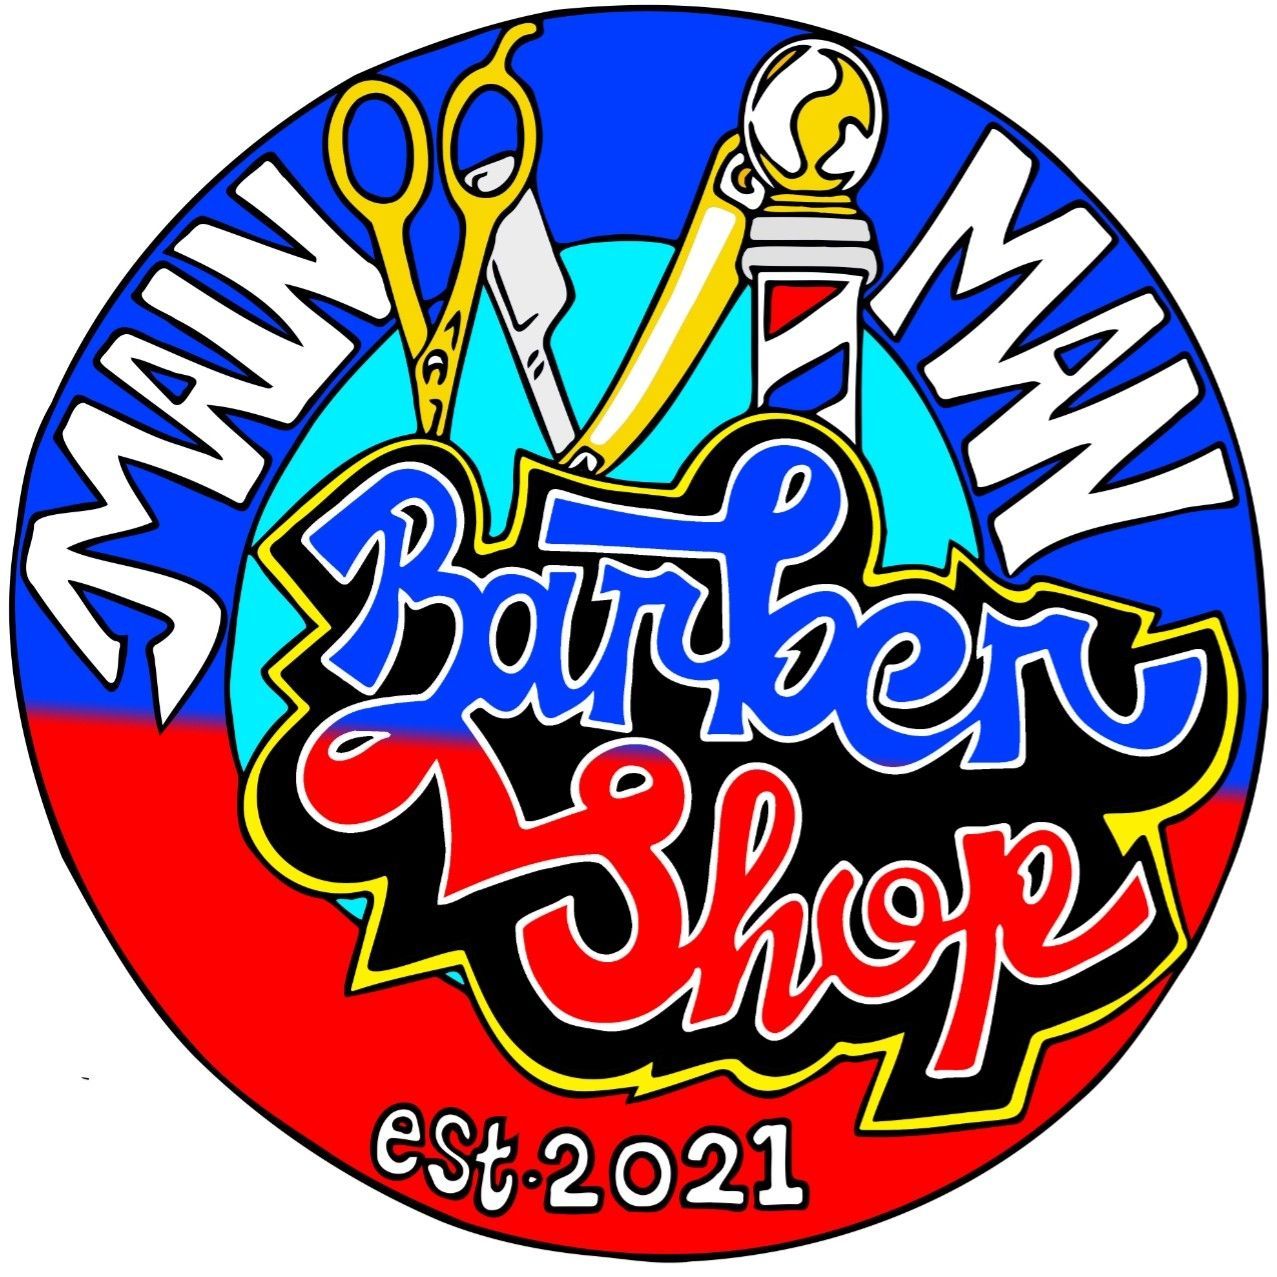 Main-Man Barber Shop, 90 Comet Rd, 7975, Ocean View